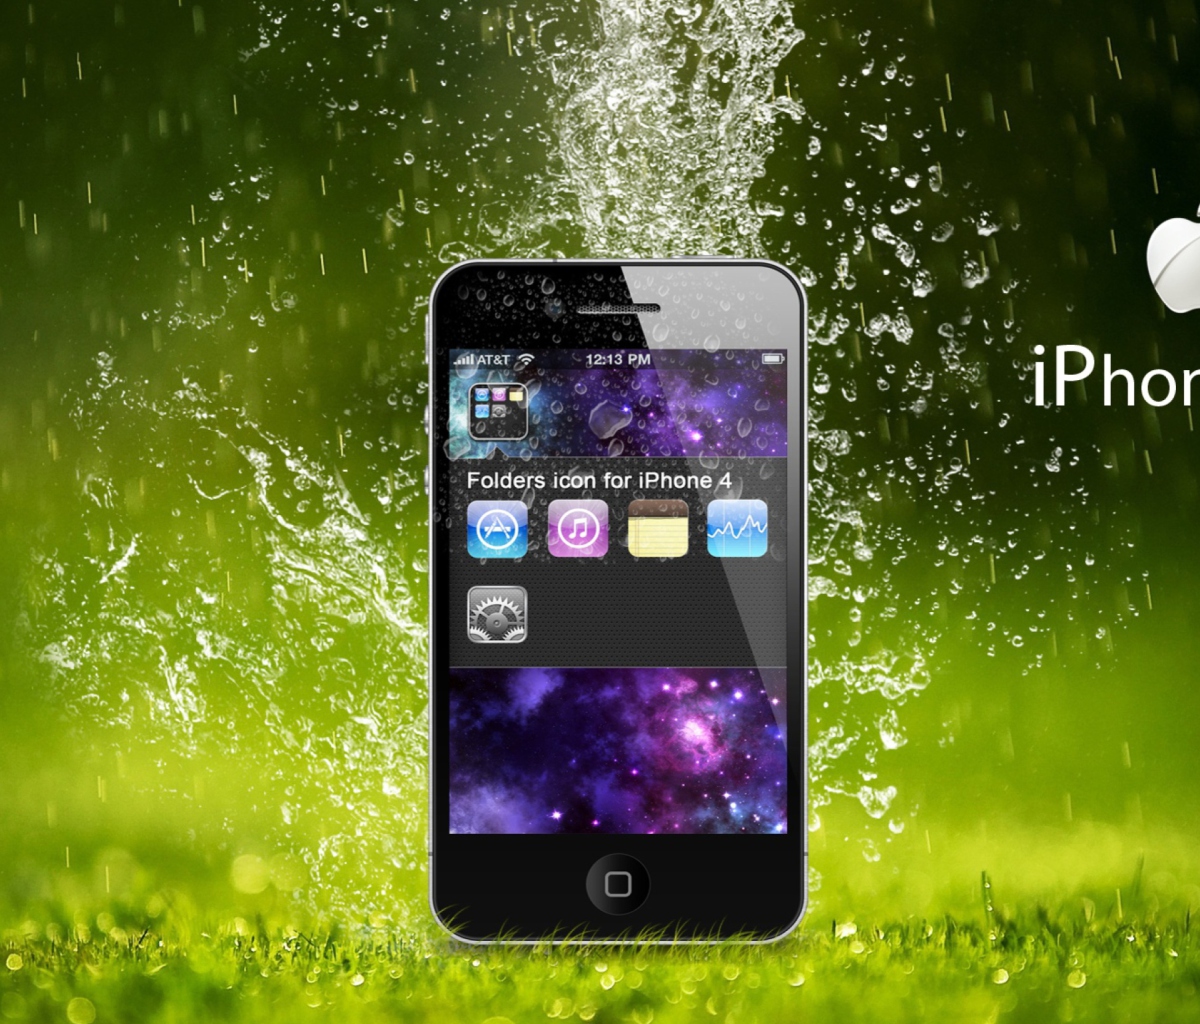 Das Rain Drops iPhone 4G Wallpaper 1200x1024